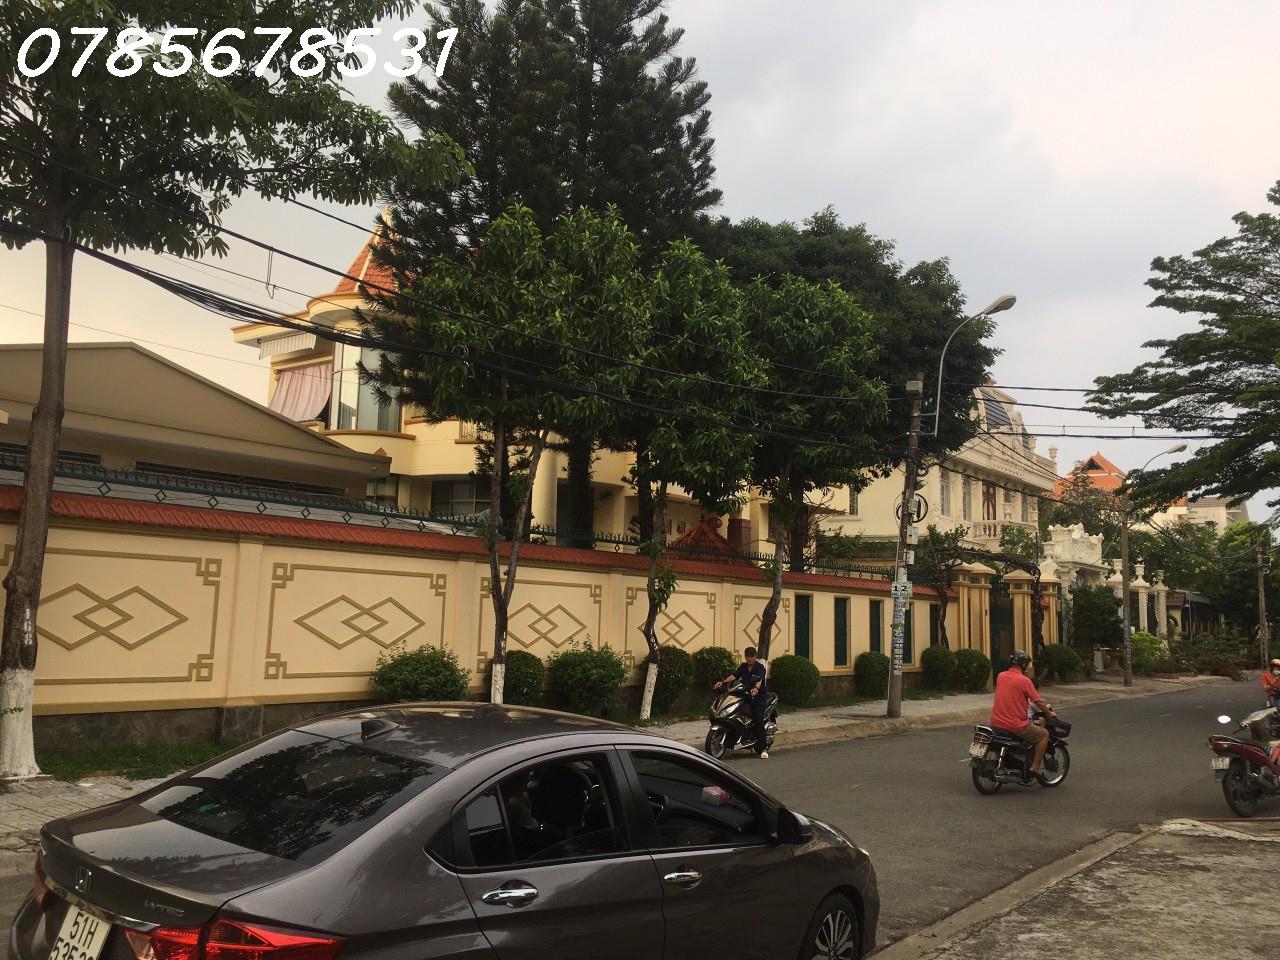 Bán nhà trước mặt, Huỳnh Thị Hai Tân Chánh Hiệp, ngang 8,2m, quận 12,Sài Gòn - Ảnh 1